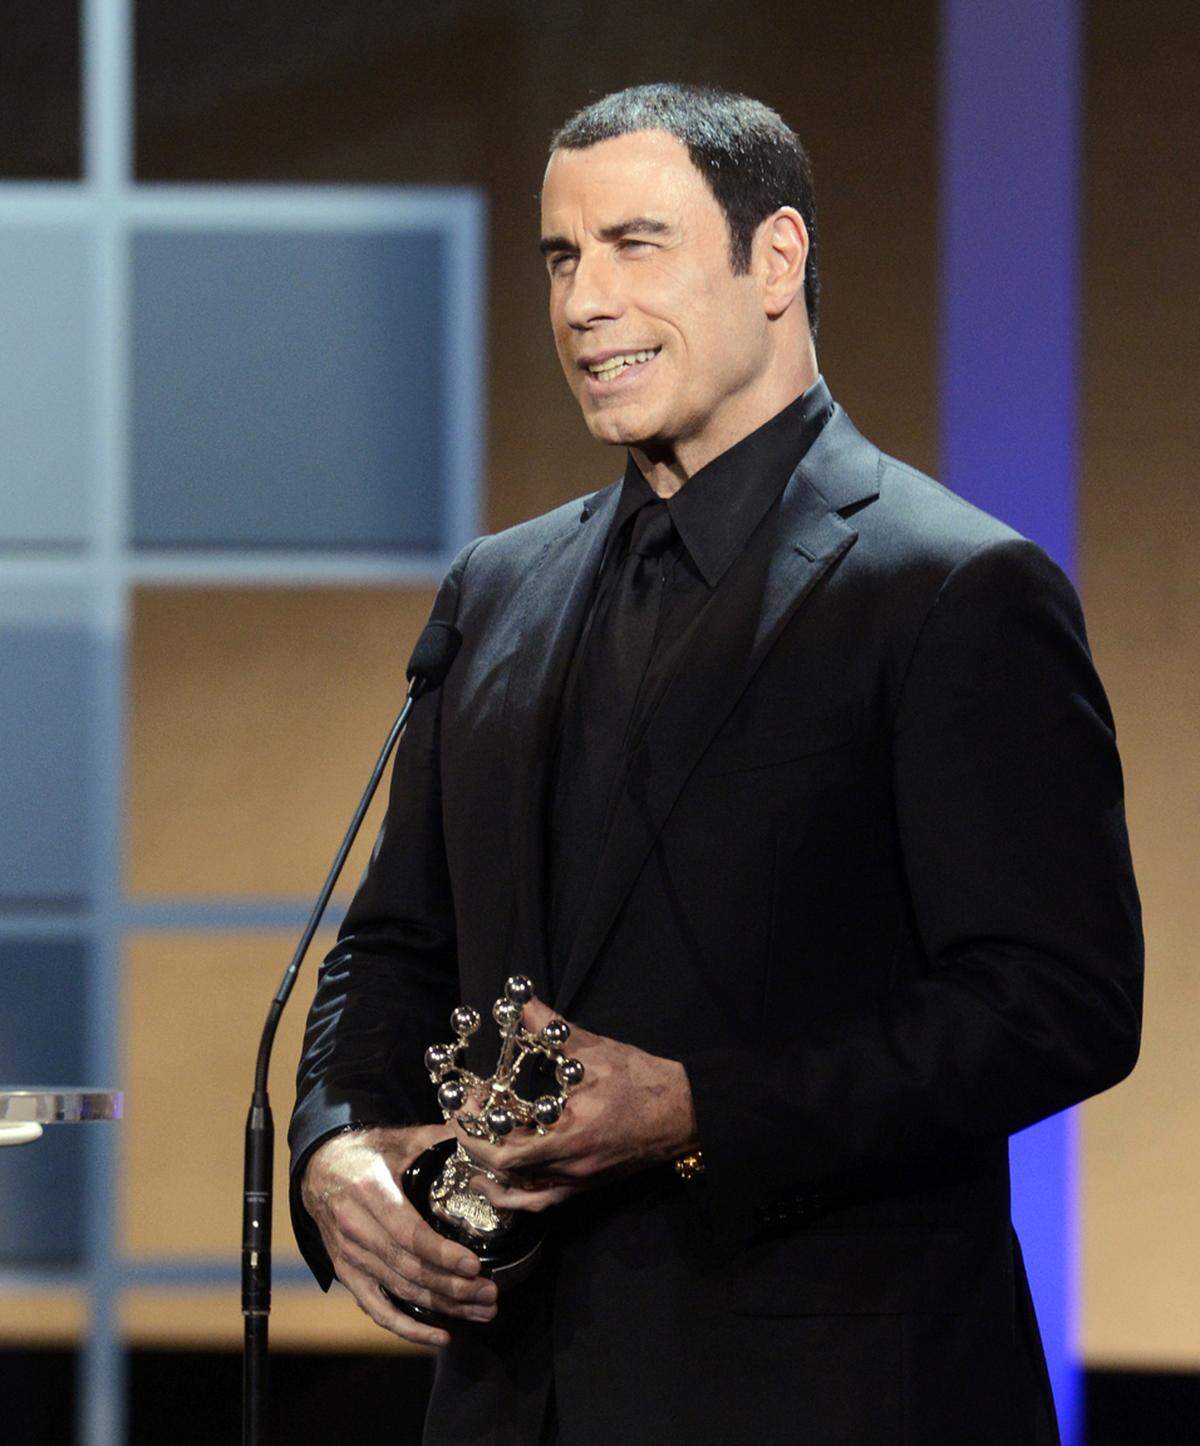 John Travolta nahm am Abend den "Donostia Award" für sein Lebenswerk entgegen. Zu den Preisträgern des Awards zählten bereits Julia Roberts, Al Pacino, Robert de Niro und Woody Allen.